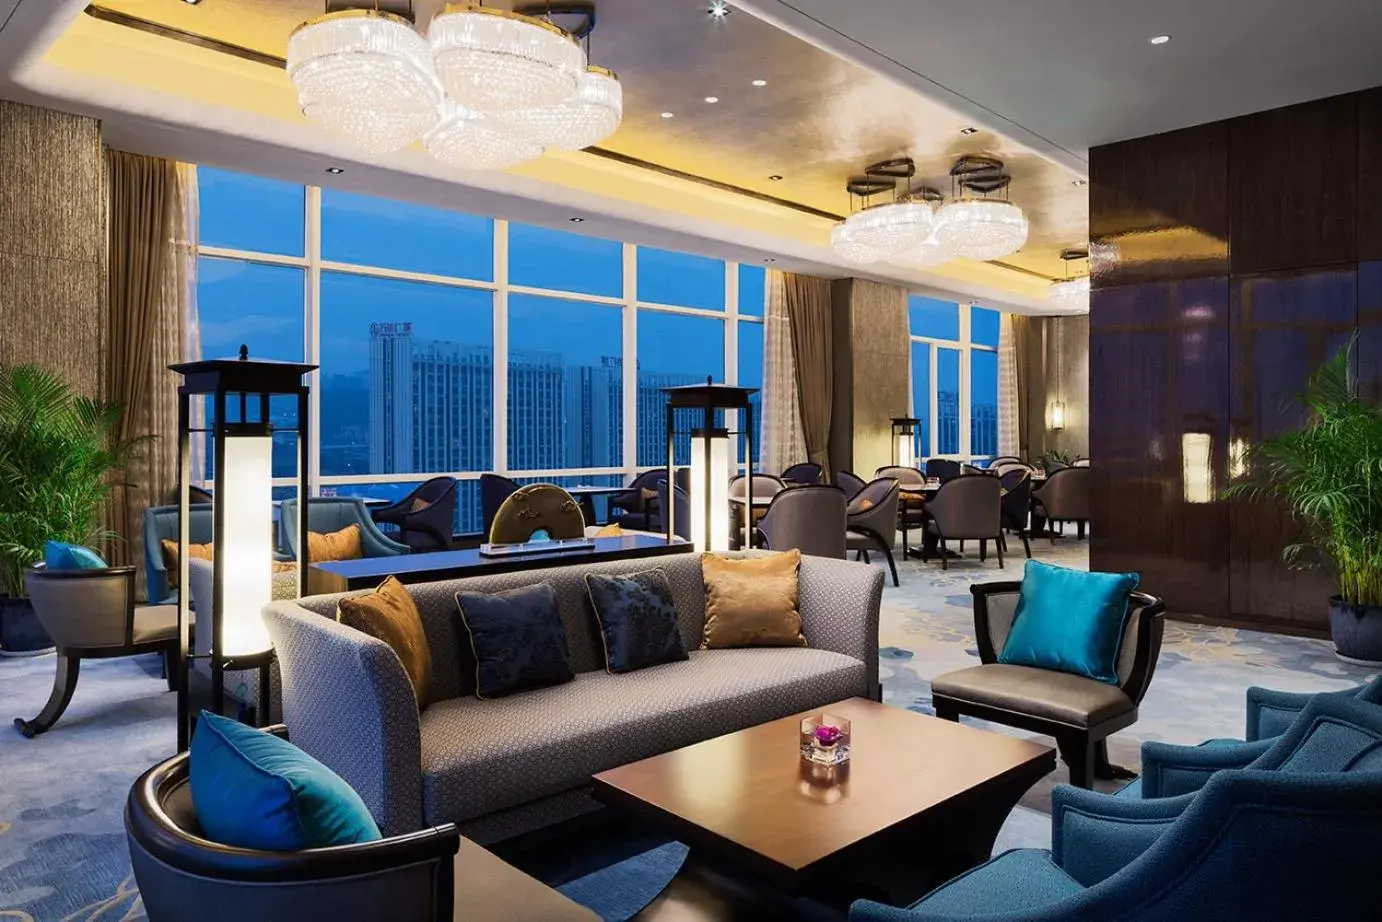 Seating Area in Wanda Realm Hotel Wuhu